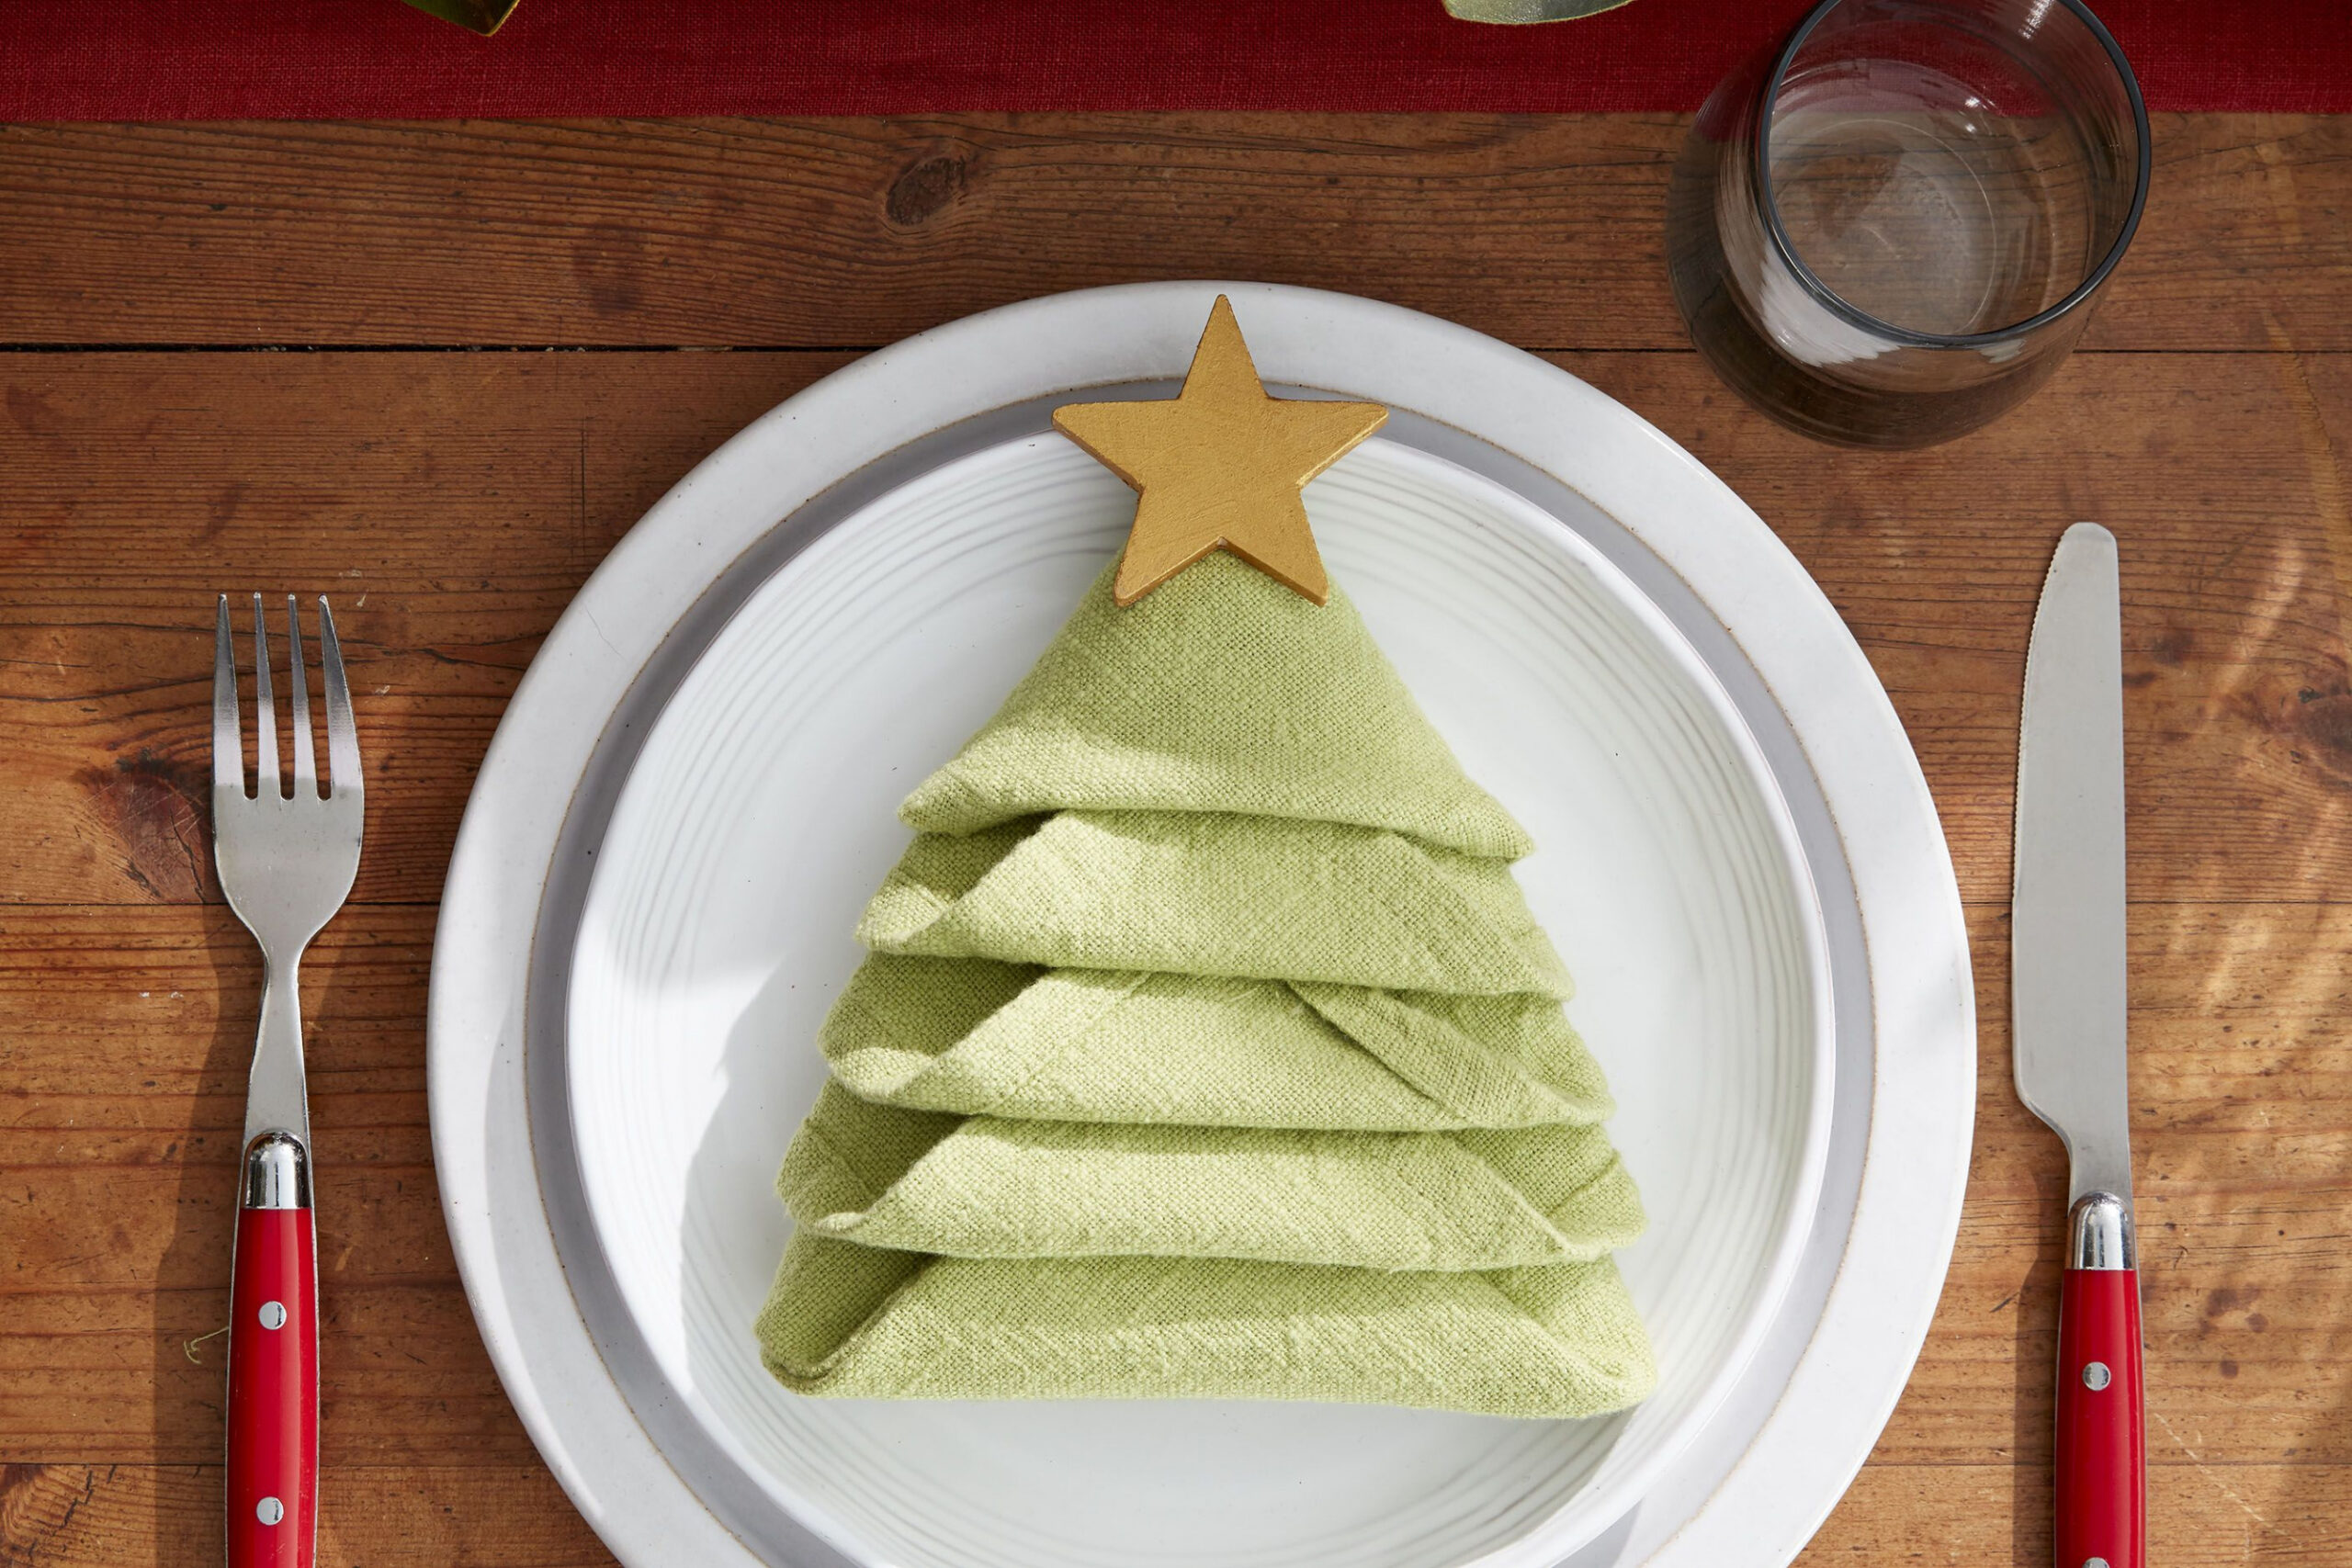 How to Make a Christmas Tree Napkin Fold - All the Steps to